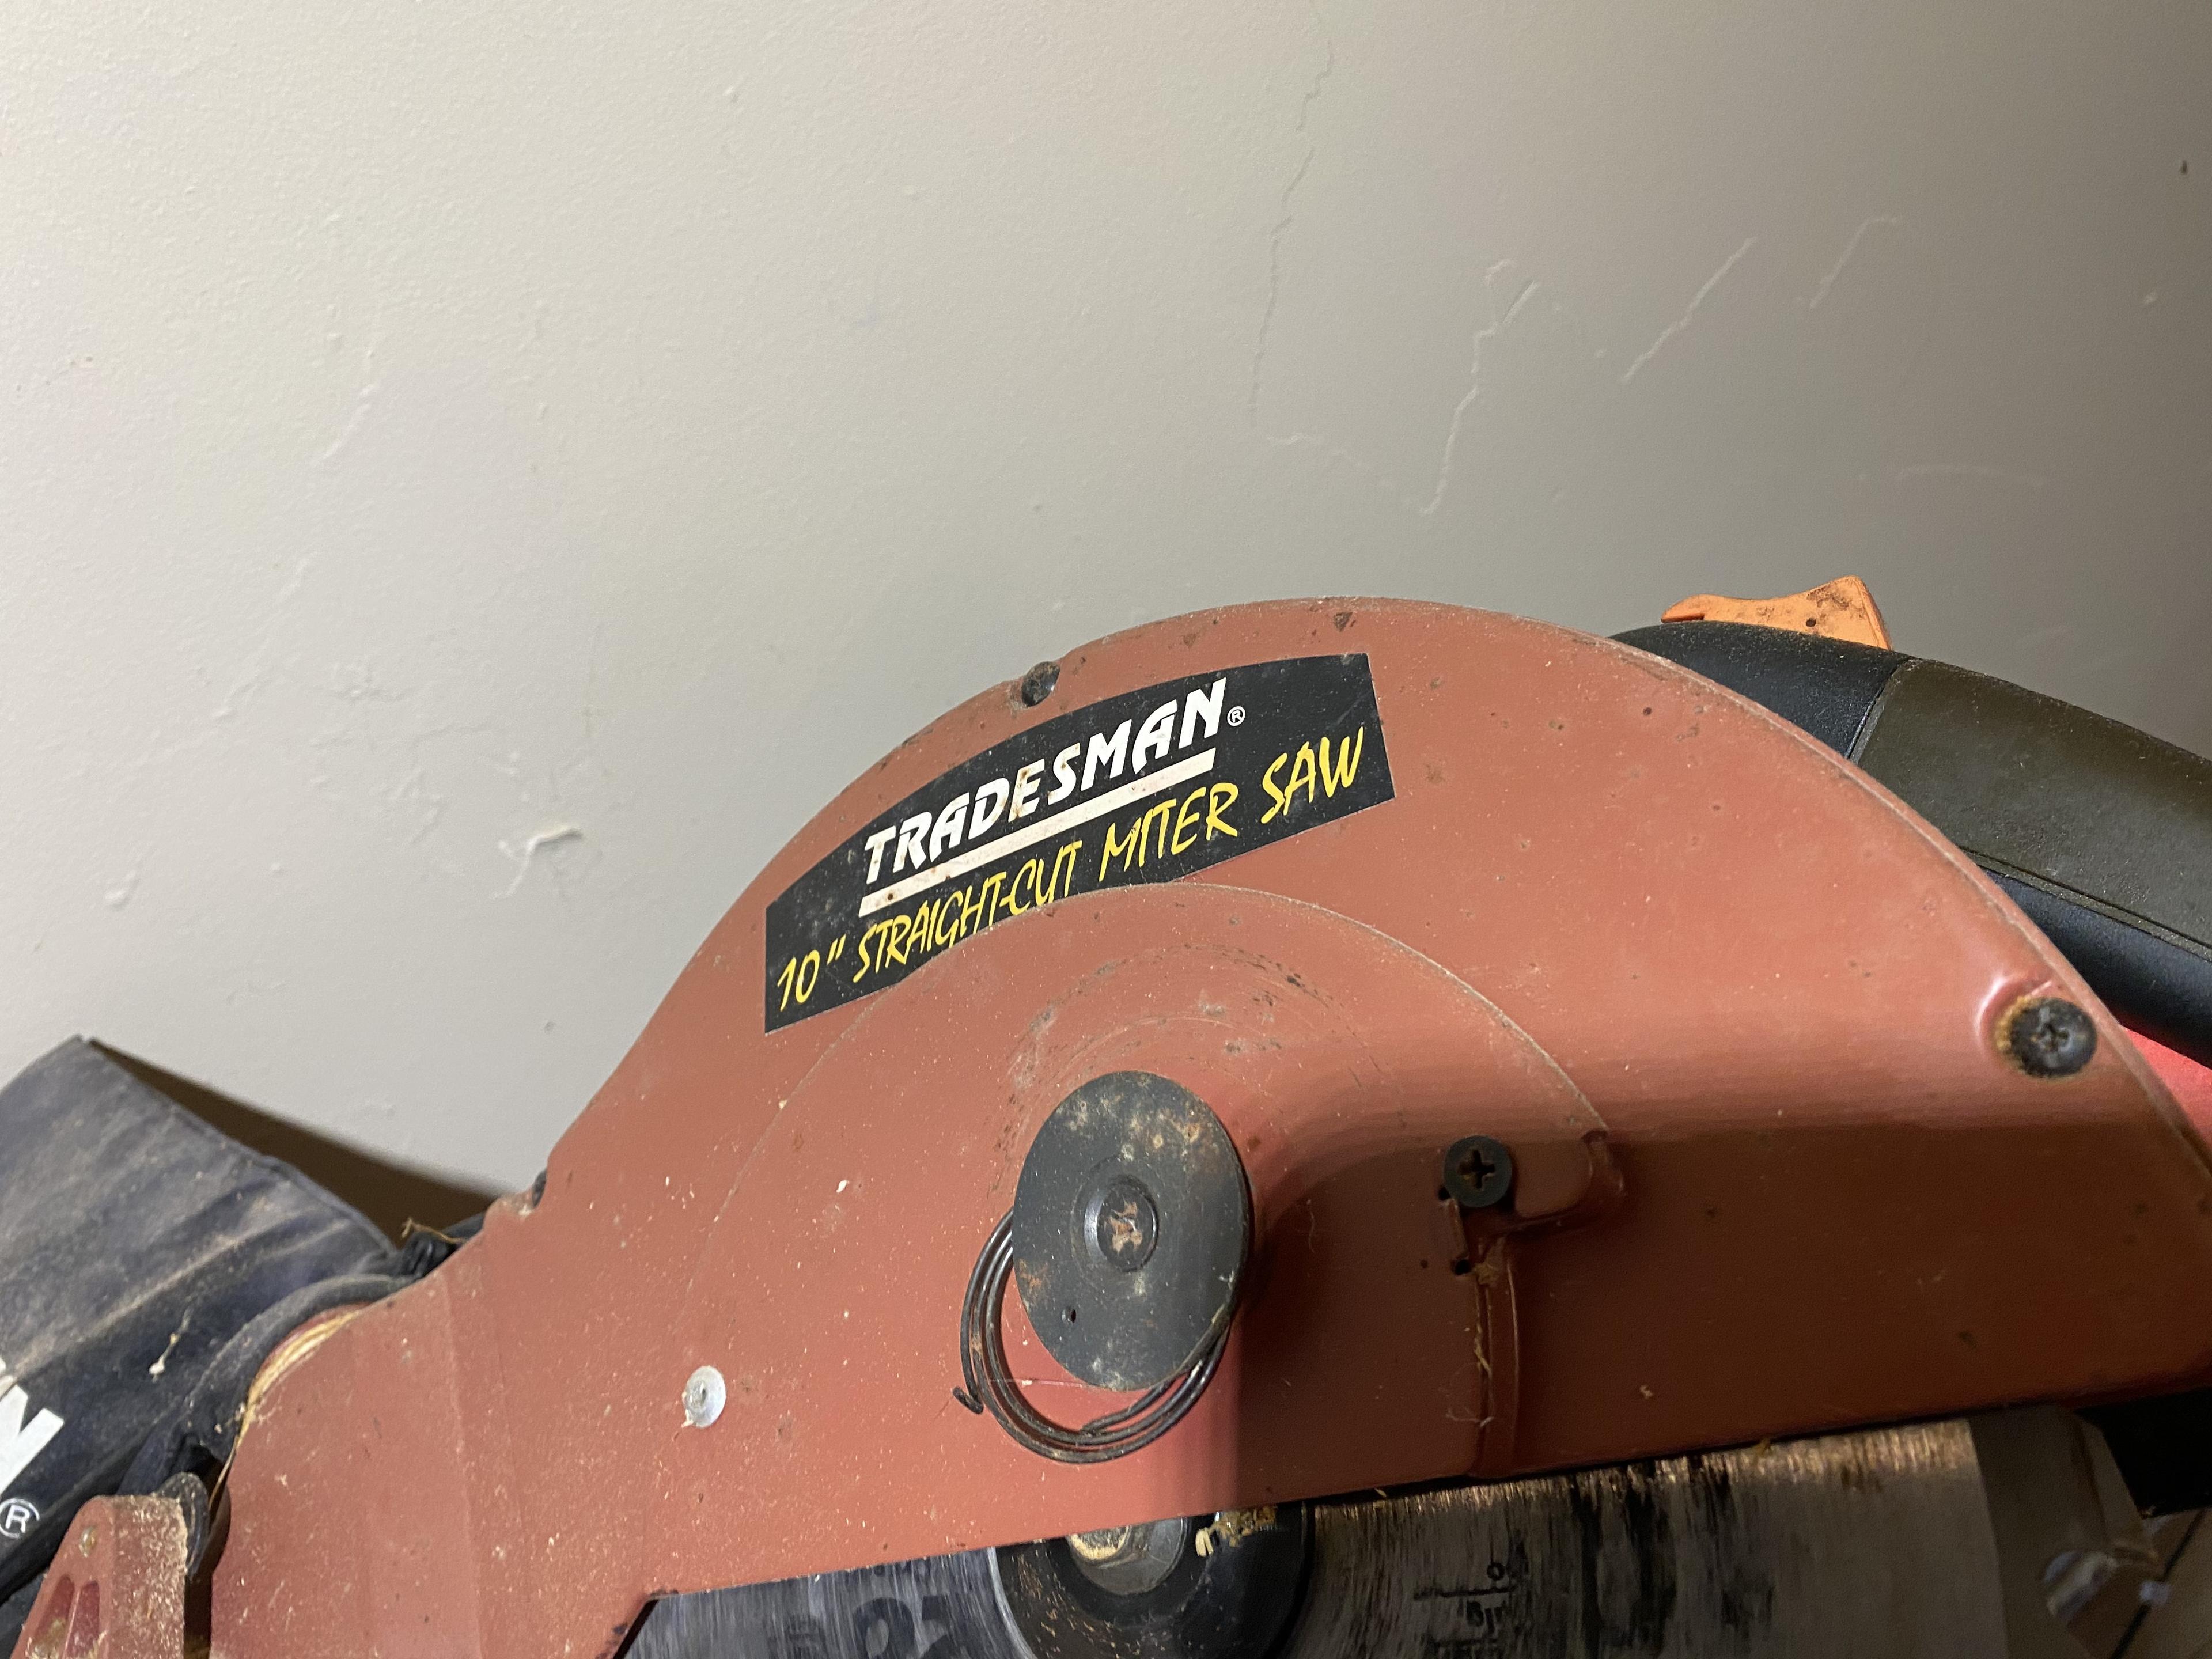 Tradesman 10" Straight Cut Miter Saw